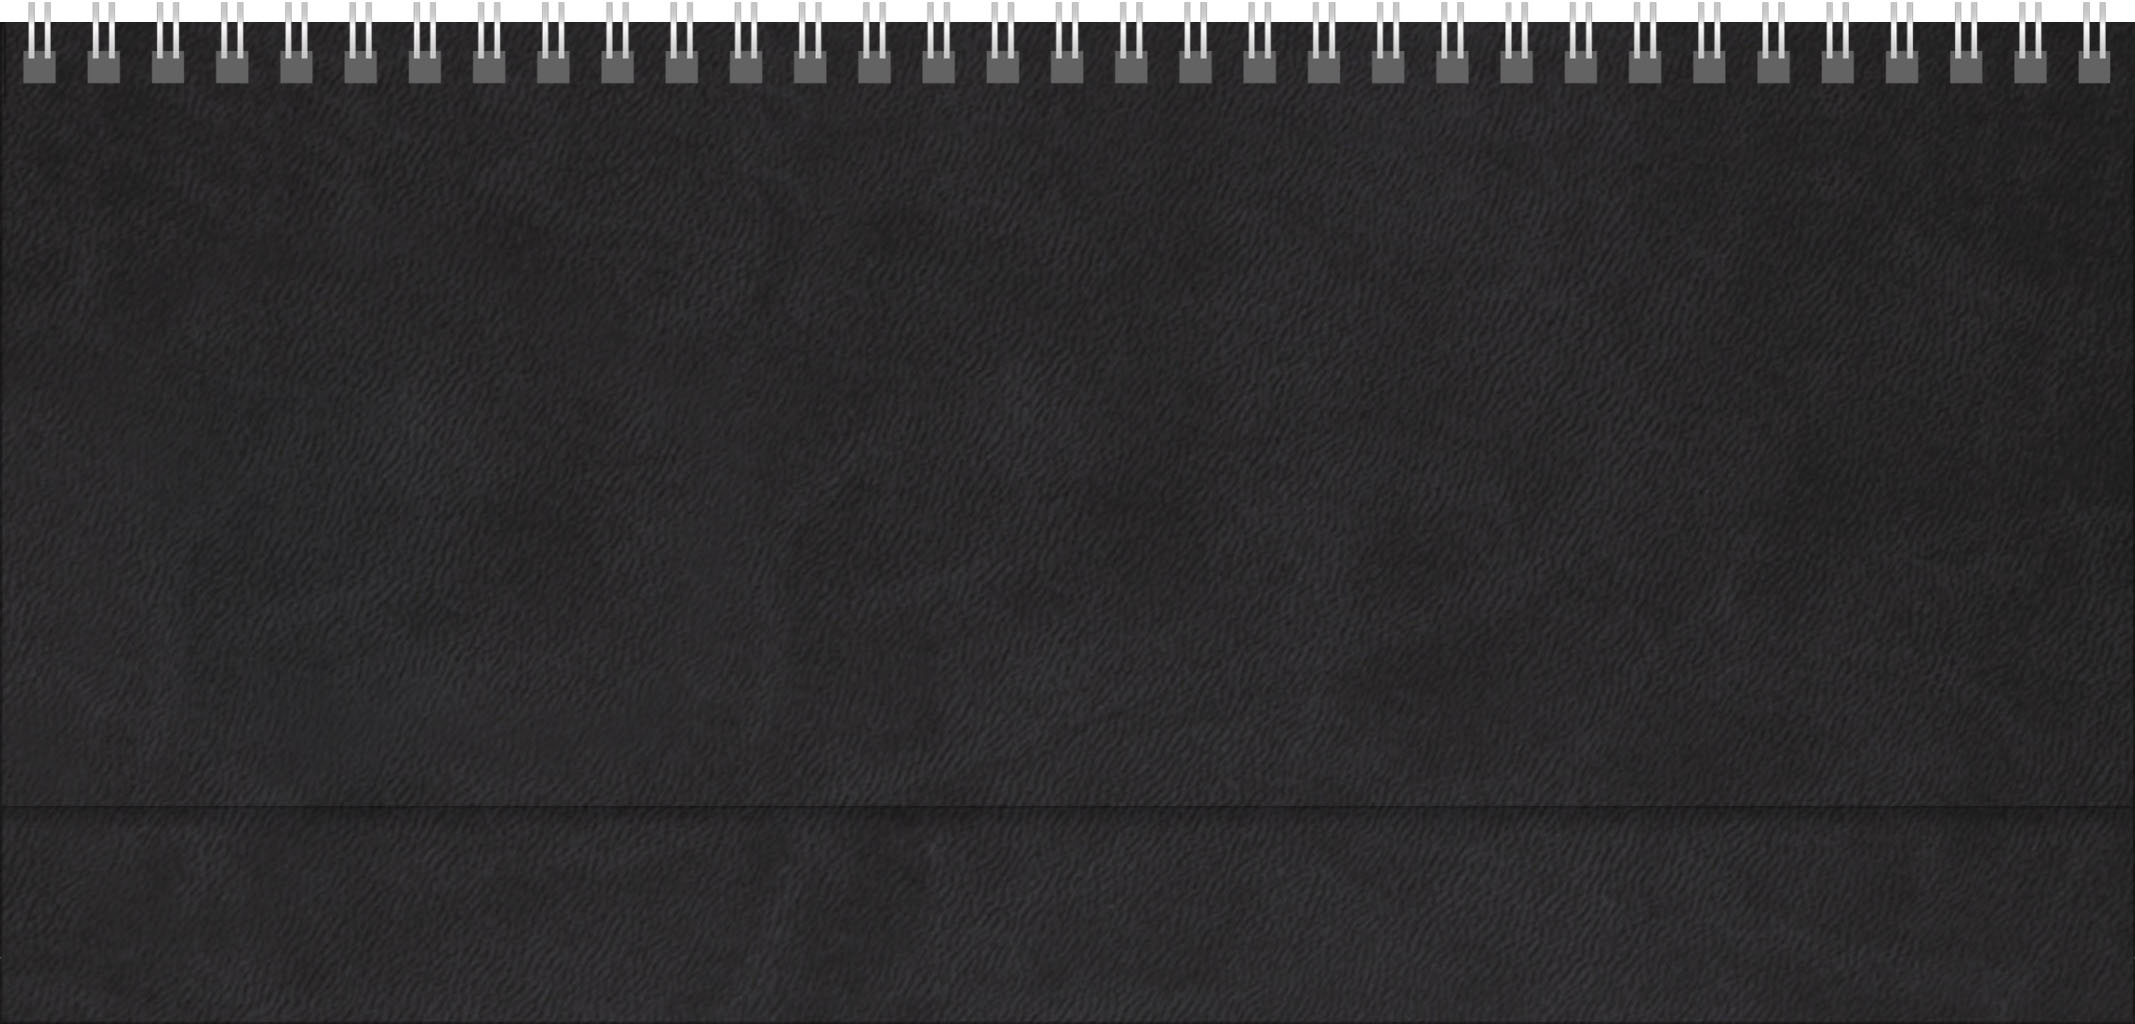 Tischquerkalender Teneriffa
Soft-Touch schwarz
1 Woche / 2 Seiten
8-sprachig GB-DE-FR-ES-IT-NL-PL-RU grau/blau